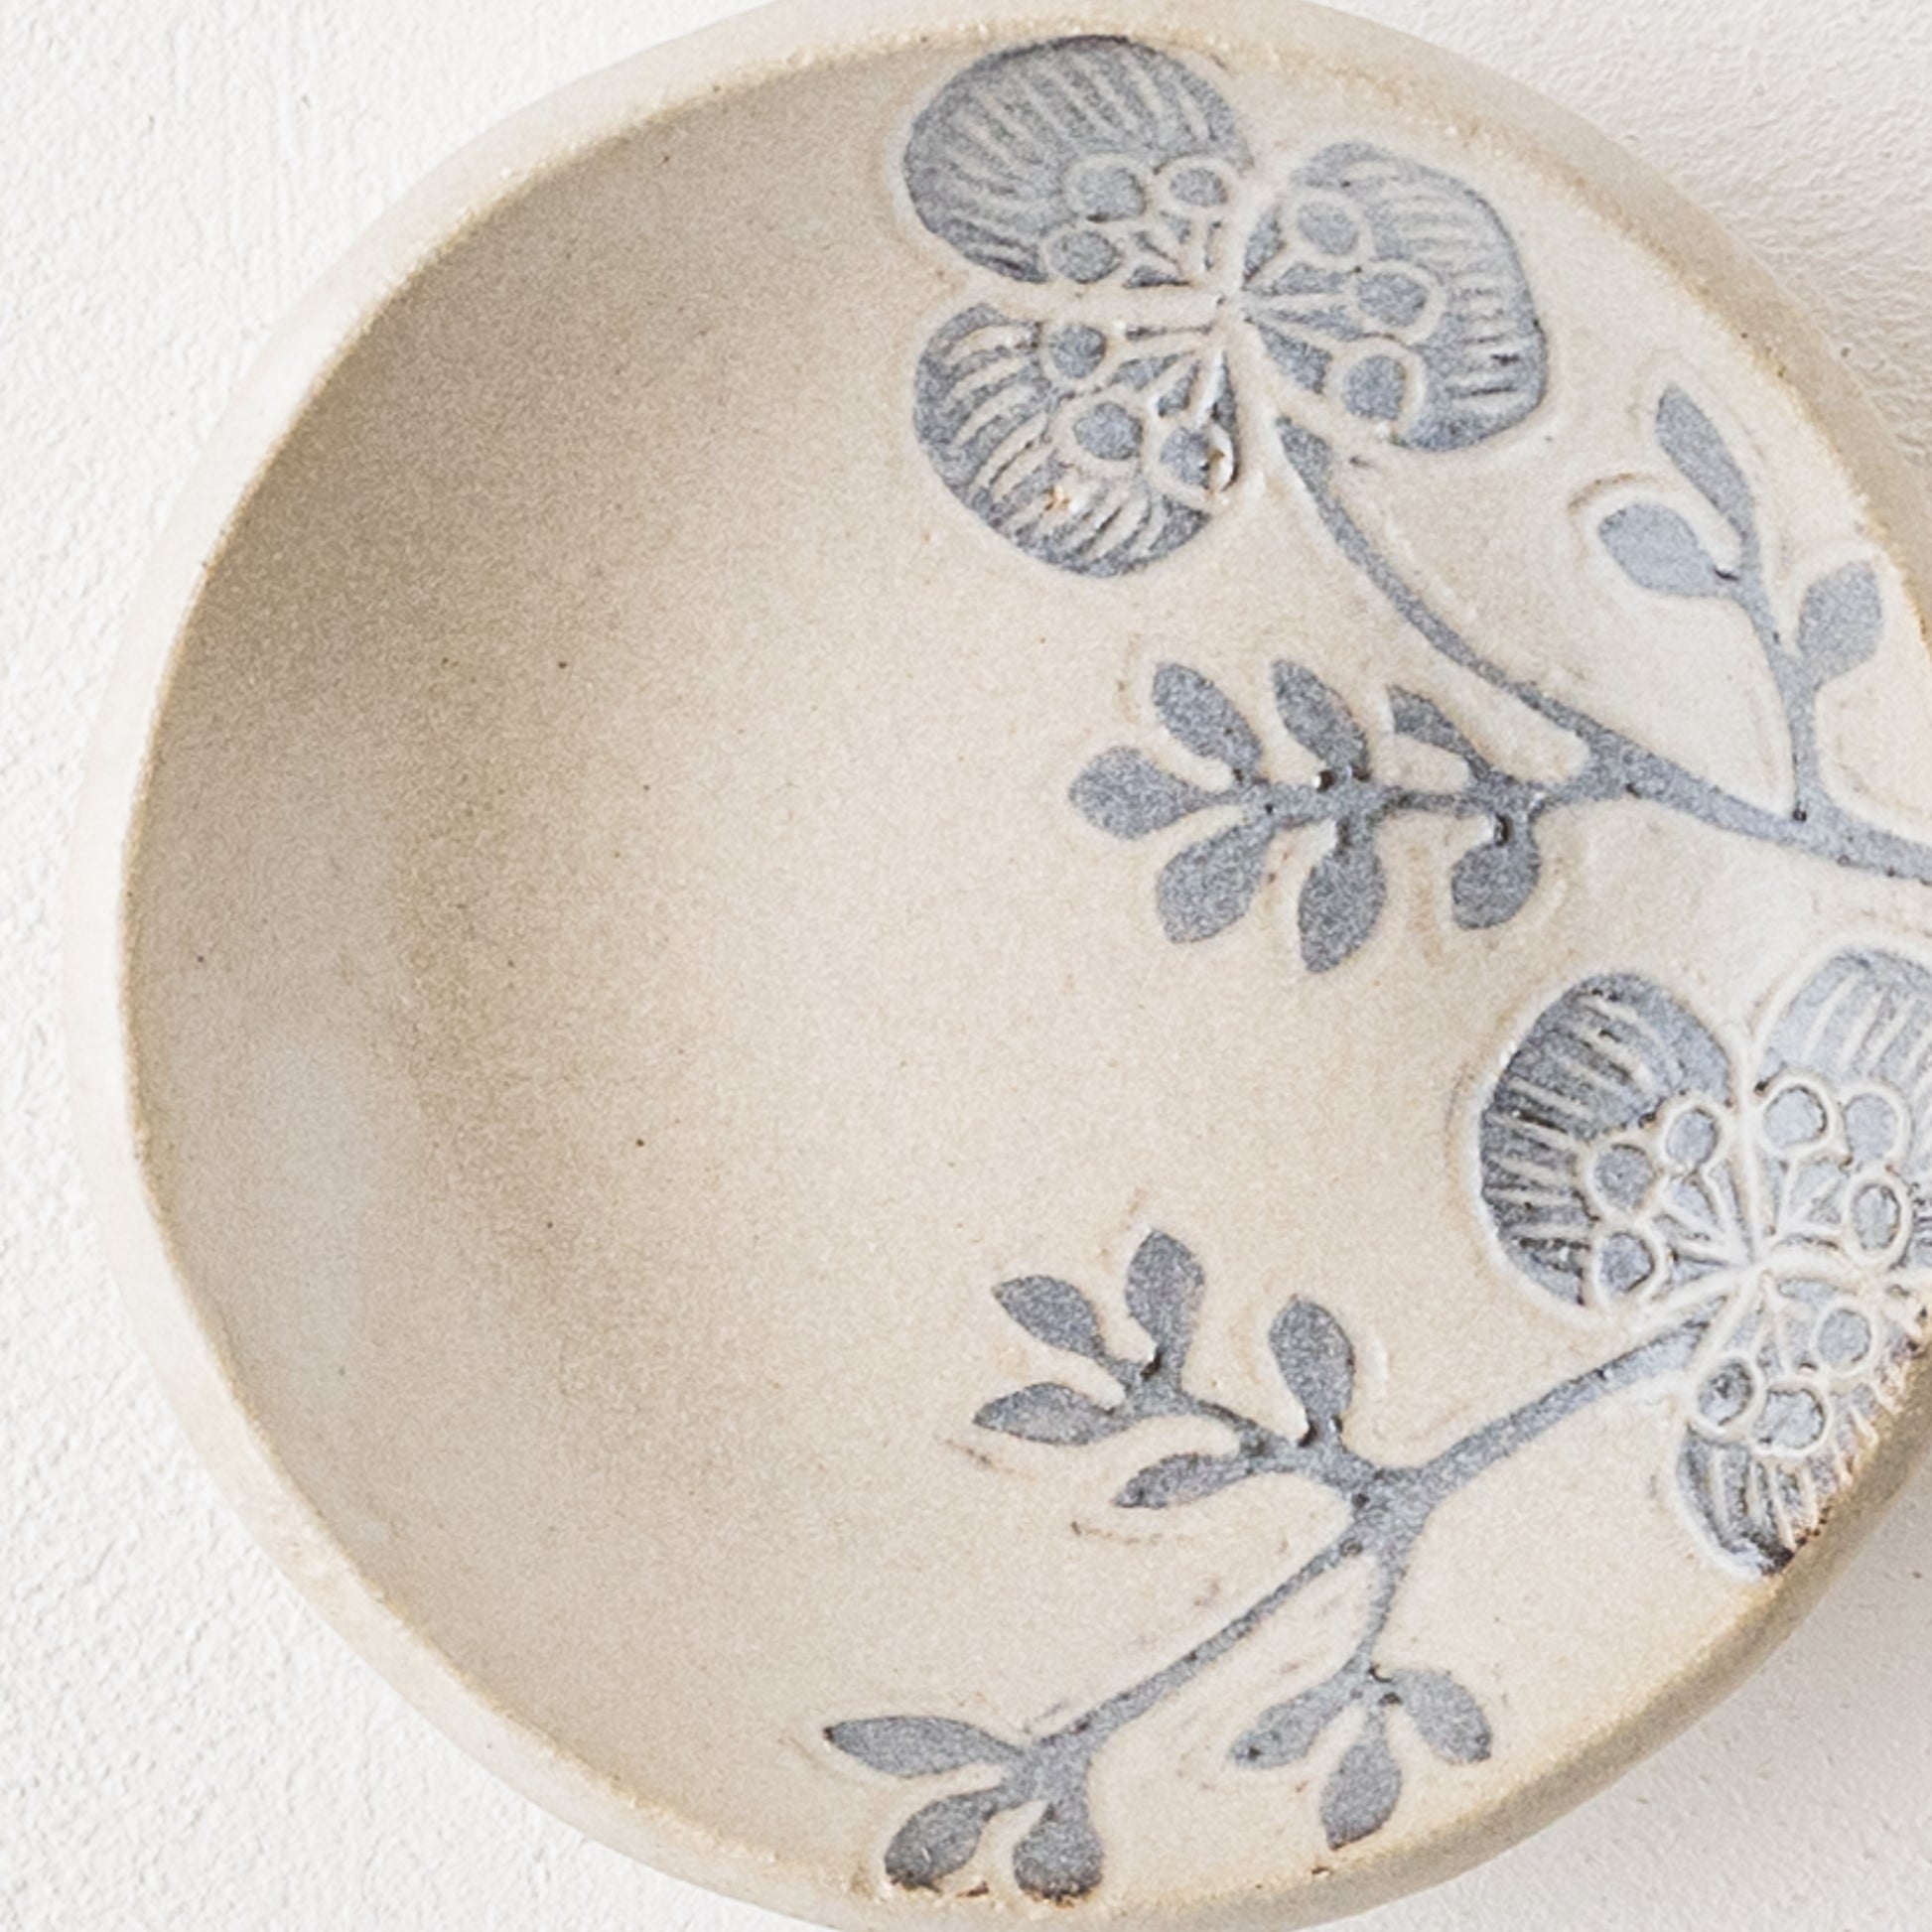 和と洋画重なり合った風合いが美しい松崎麗さんのお花模様の豆皿